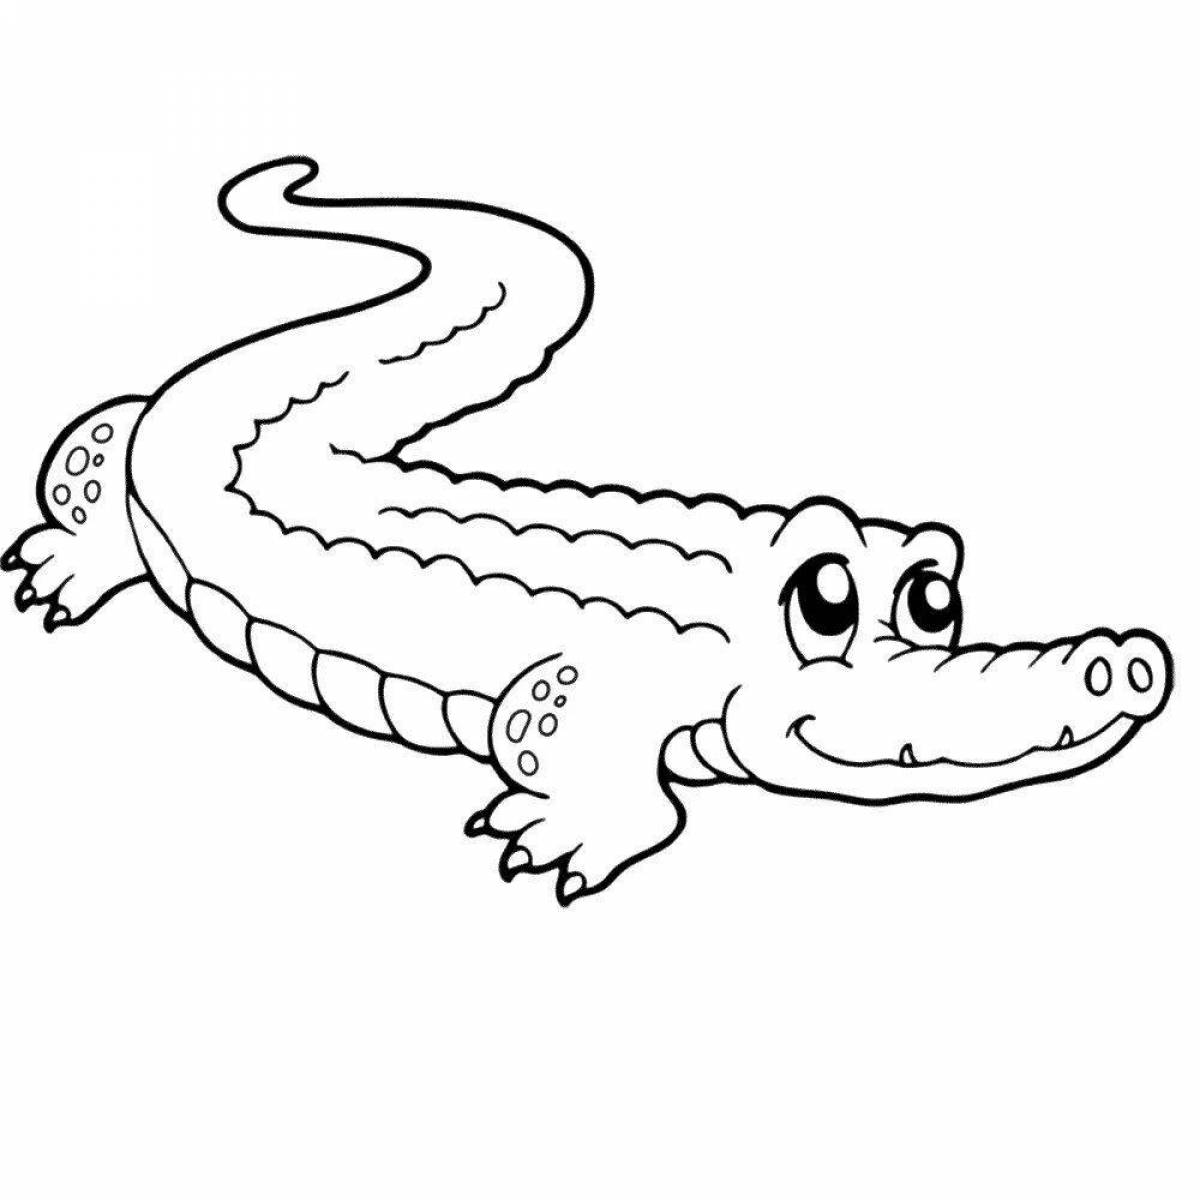 Привлекательный рисунок крокодила для детей